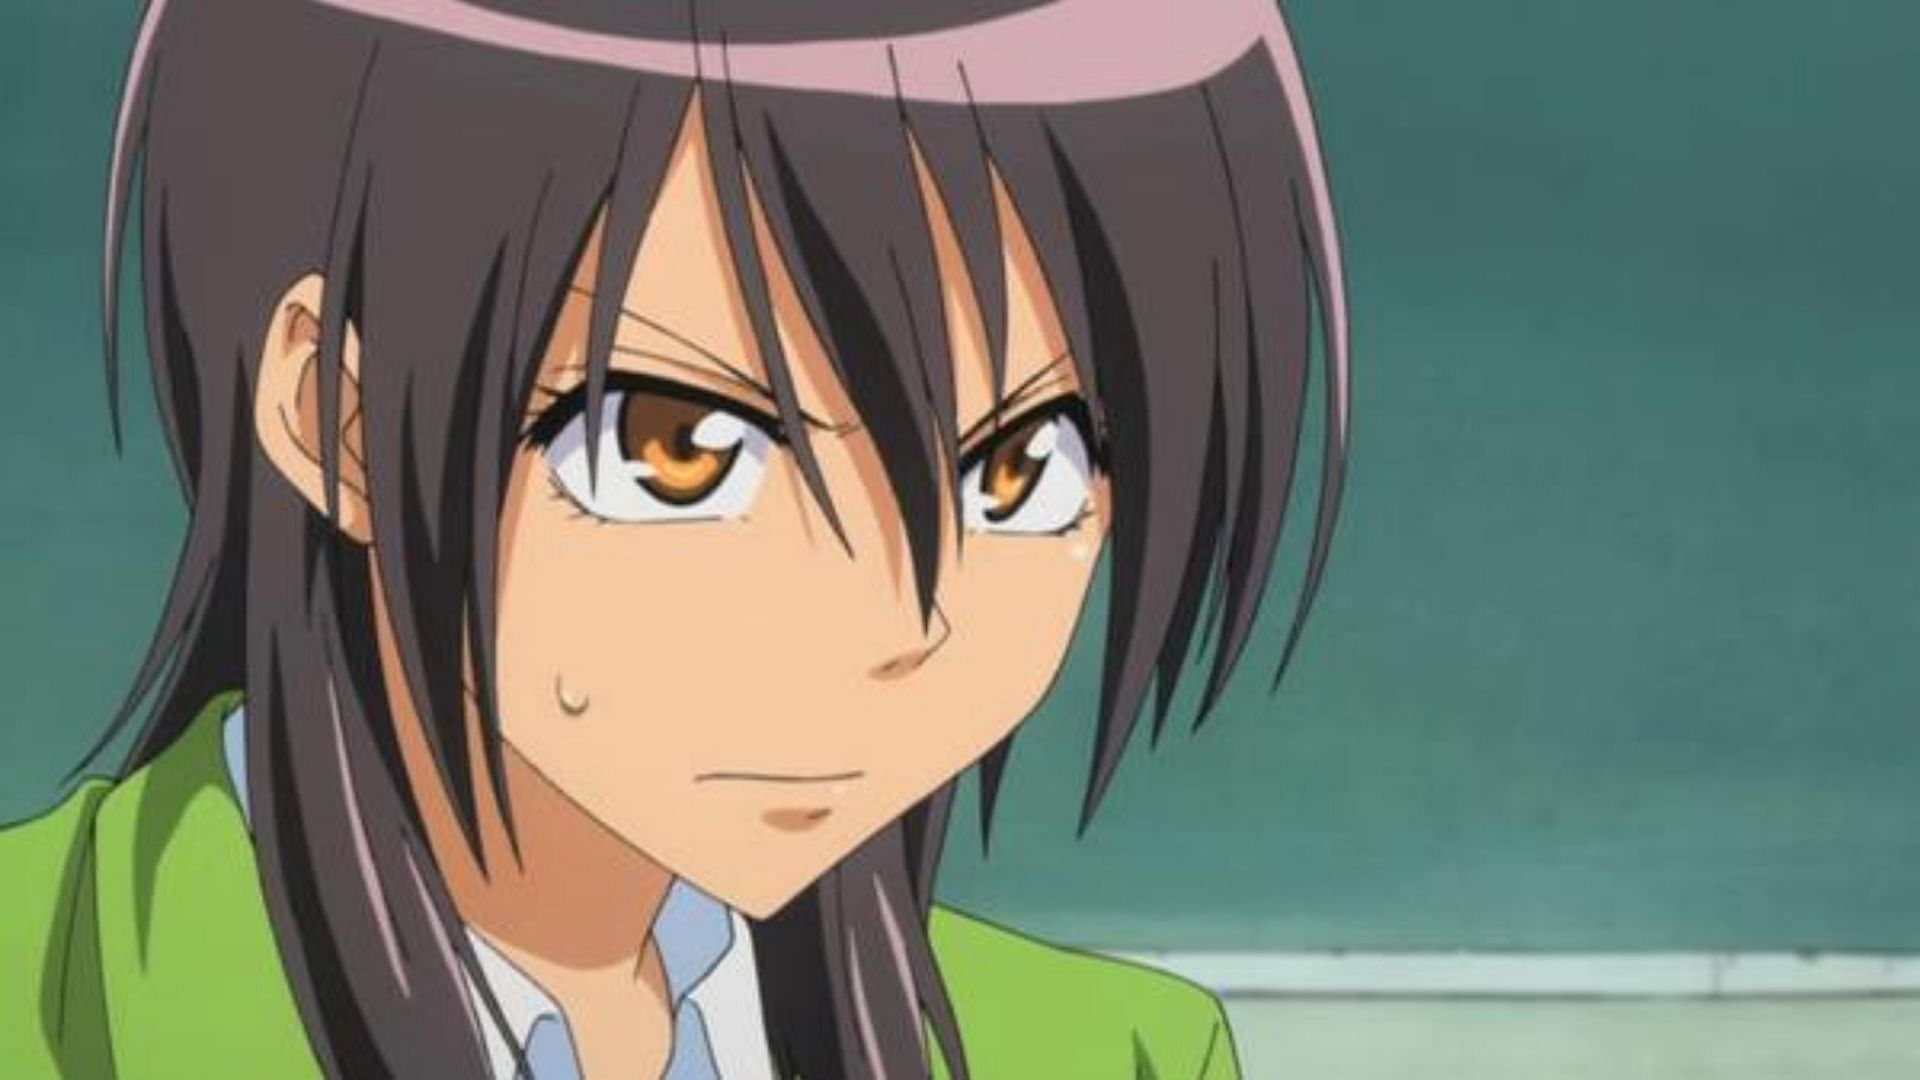 Misaki as shown in anime (Image via Studio J.C.Staff)